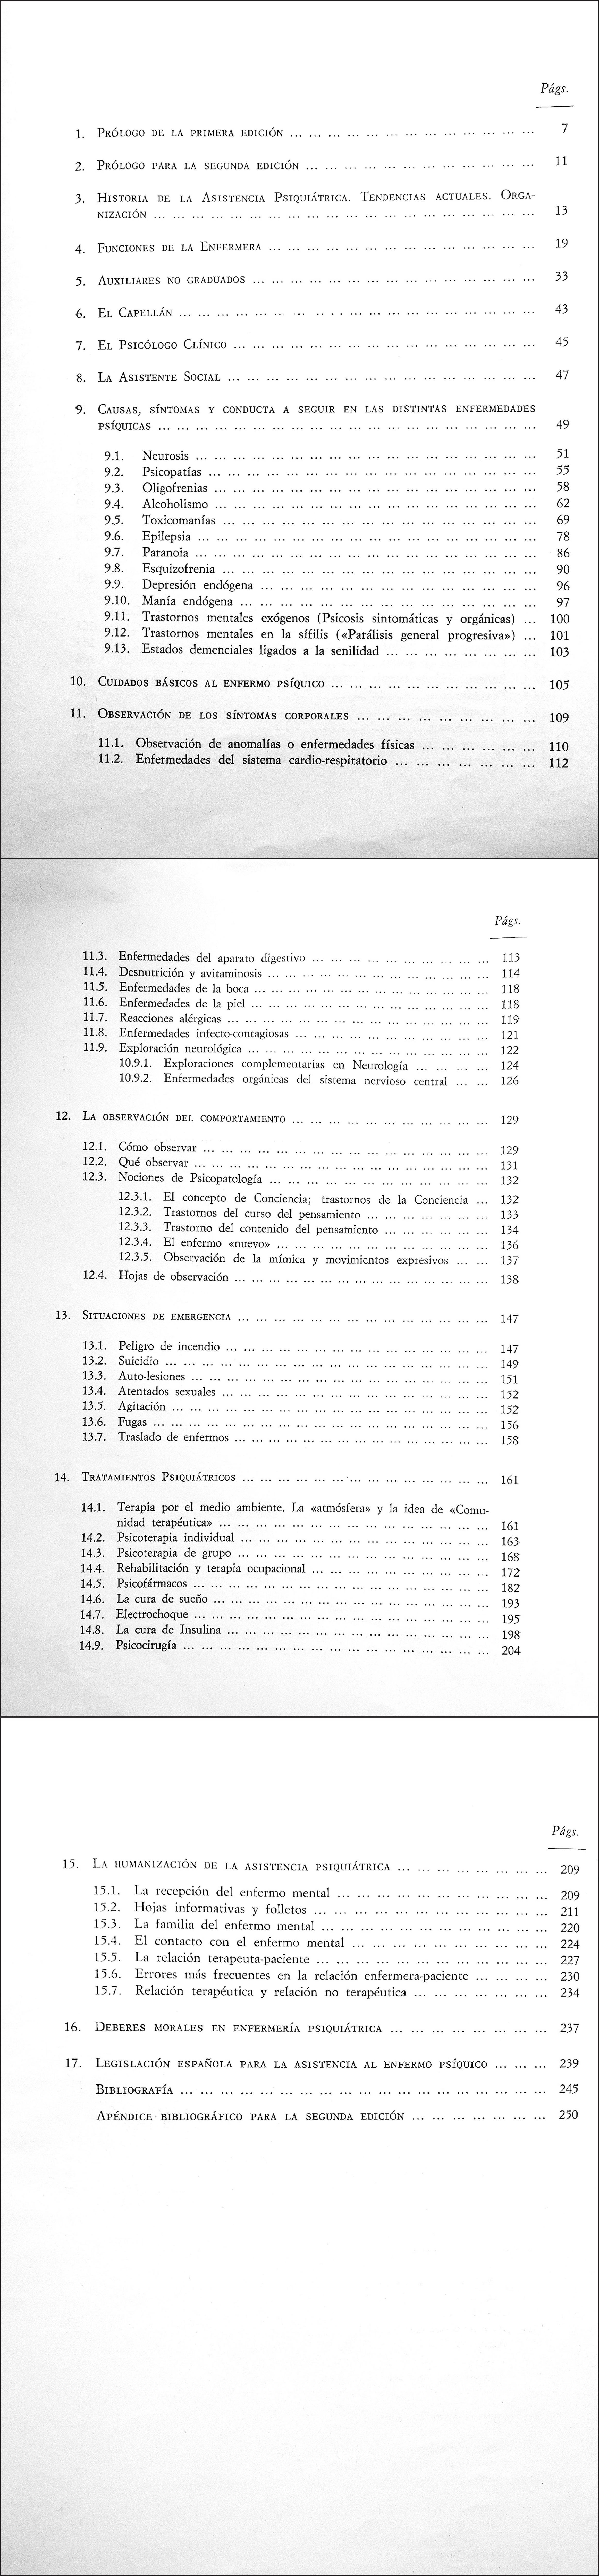 Guía para auxiliares psiquiátricos (1967) de Fernando Claramunt: la  vocación psico-social en el cuidado del enfermo mental